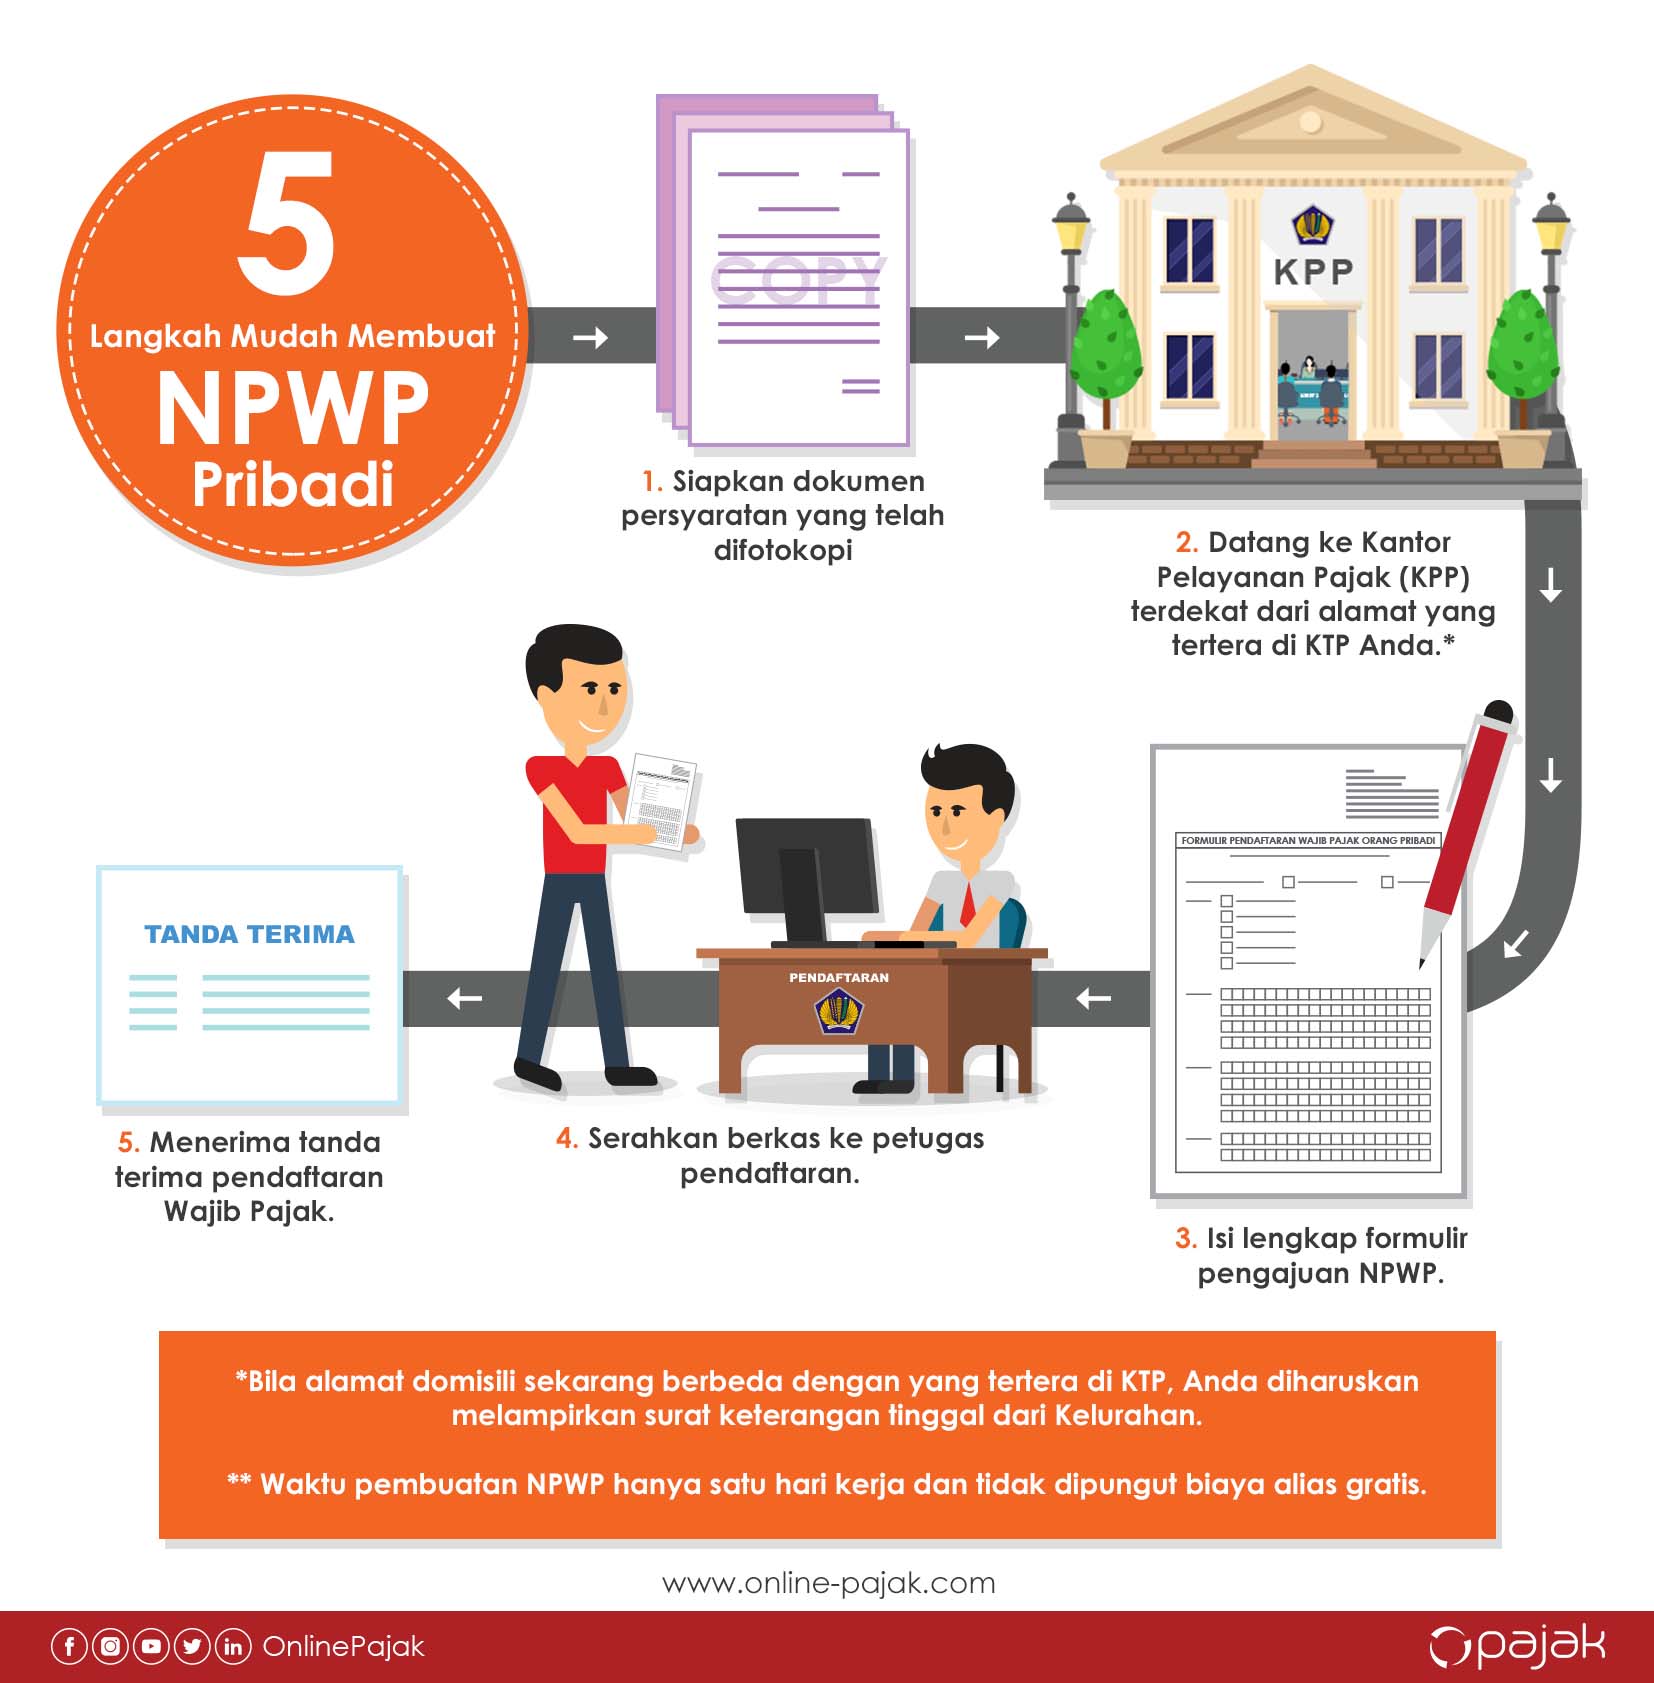 Bingung gimana caranya membuat NPWP pribadi? Temukan informasi 2 cara daftar NPWP pribadi lengkap dengan syaratnya di artikel ini!